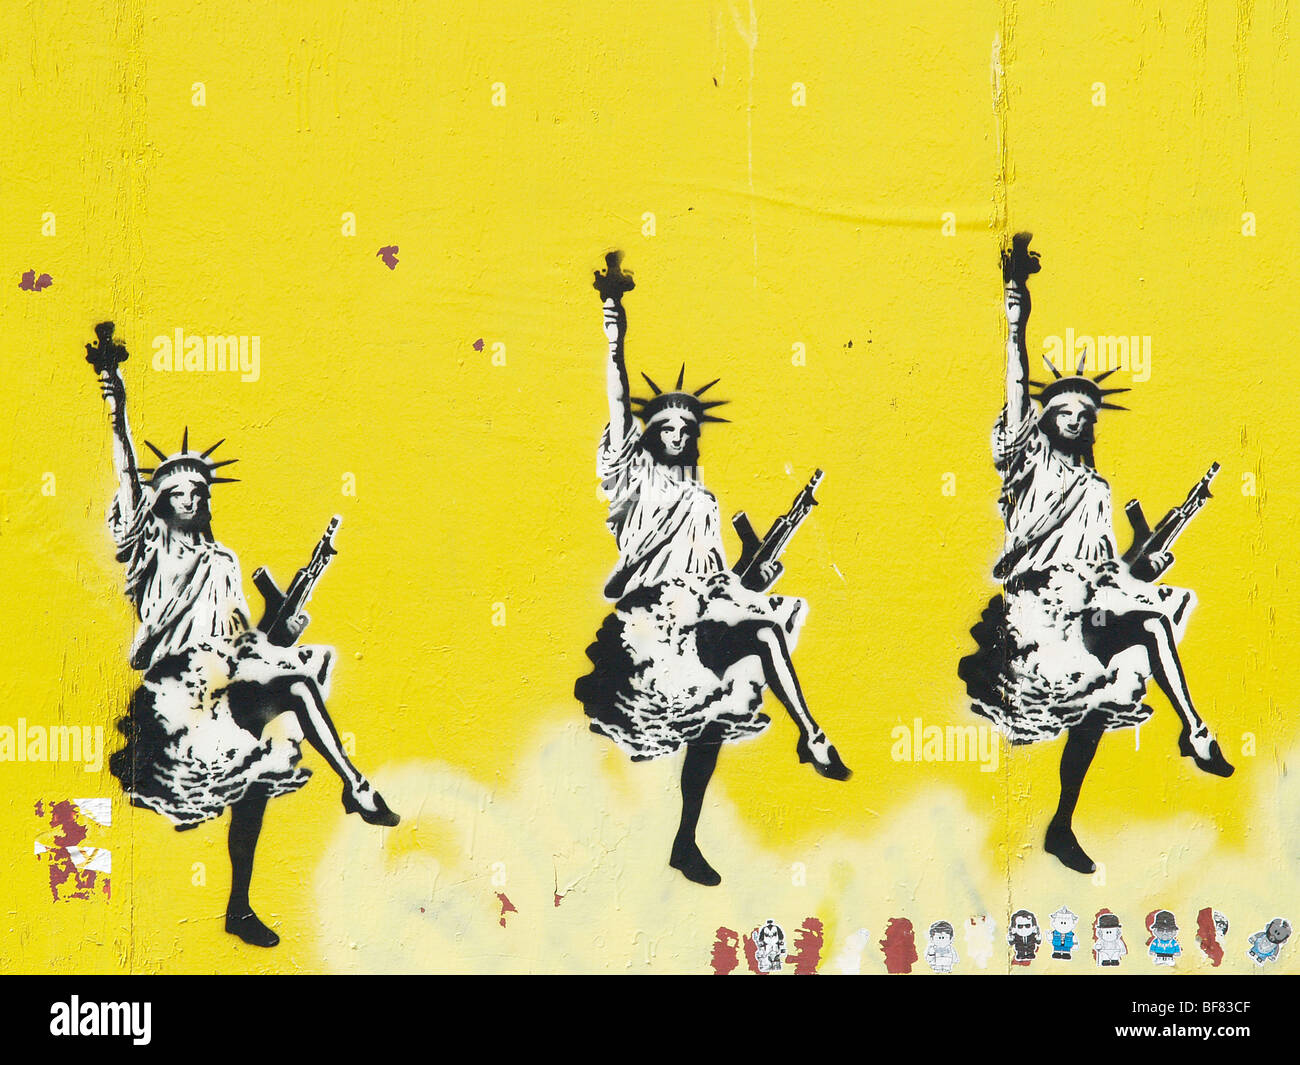 Graffiti pochoir style banksy, street art à Bristol, Angleterre, Royaume-Uni, statue de la liberté d'AK 47, mur jaune liberté dame bristol Banque D'Images